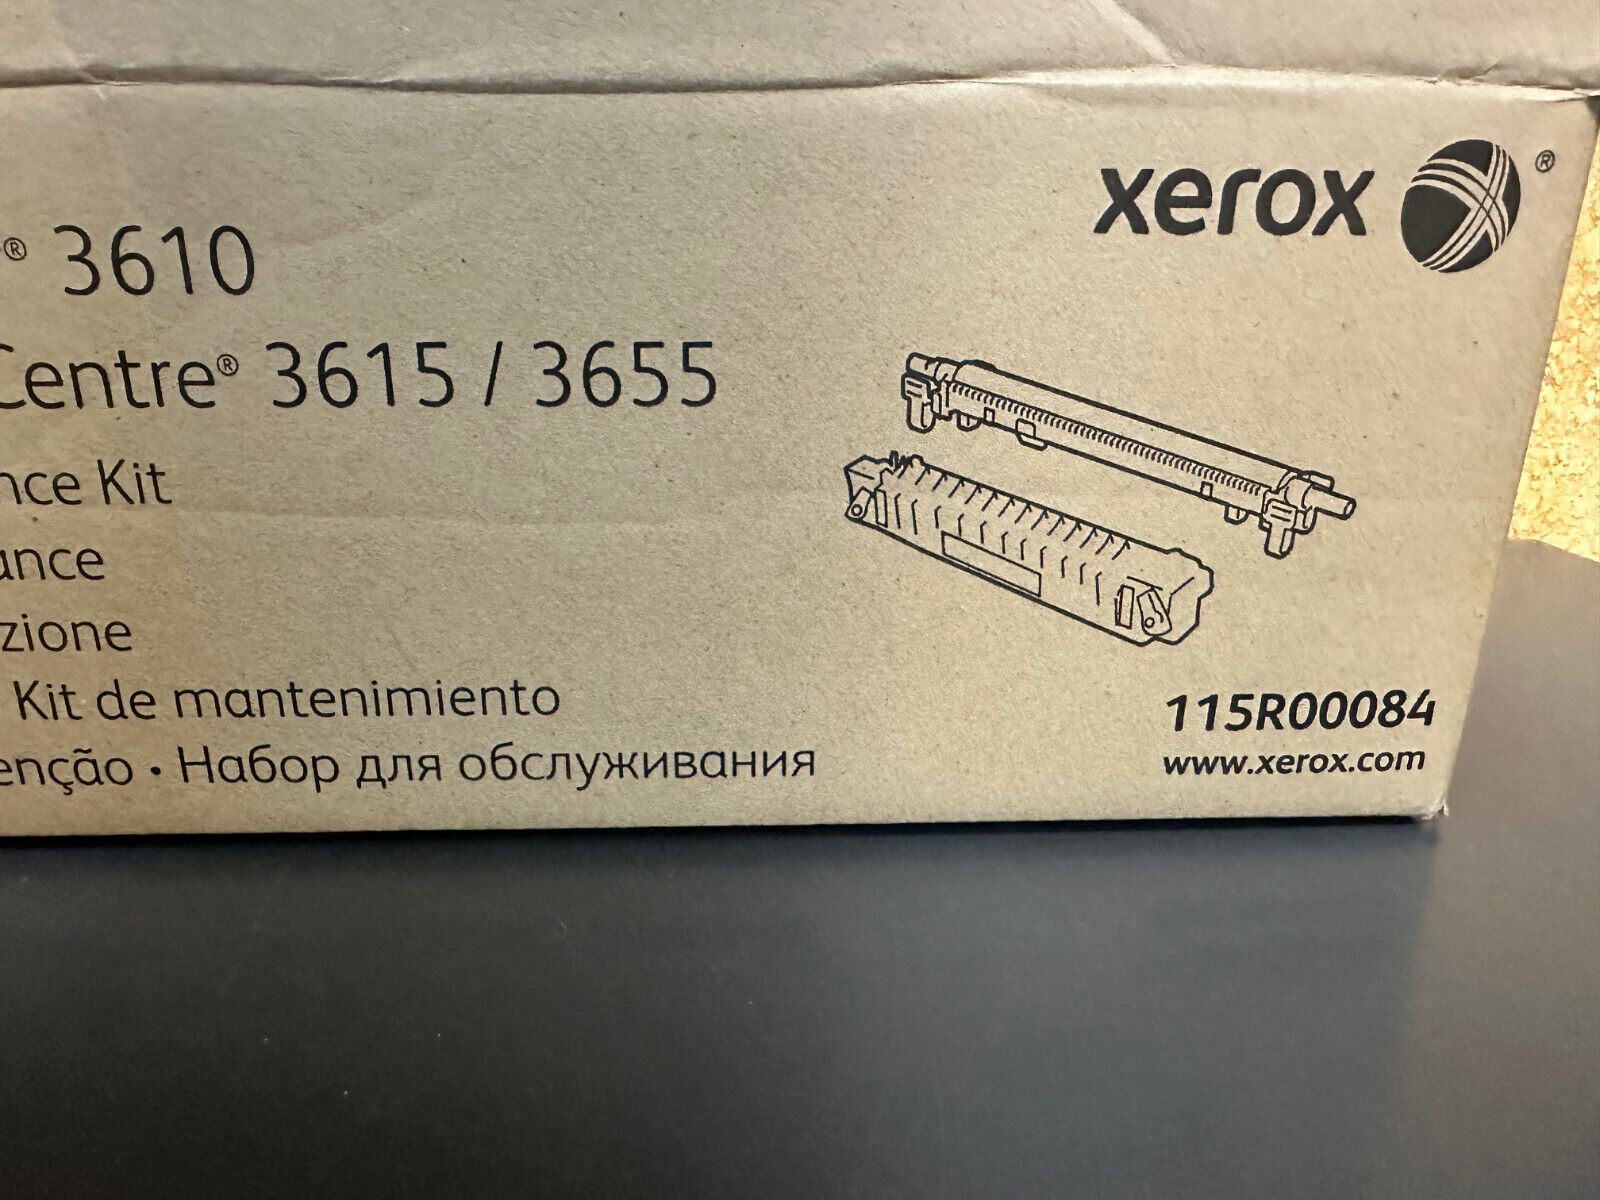 NEW XEROX 115R00084 PHASER 3610 3615 Fuser MAINTENANCE KIT - OPEN BOX